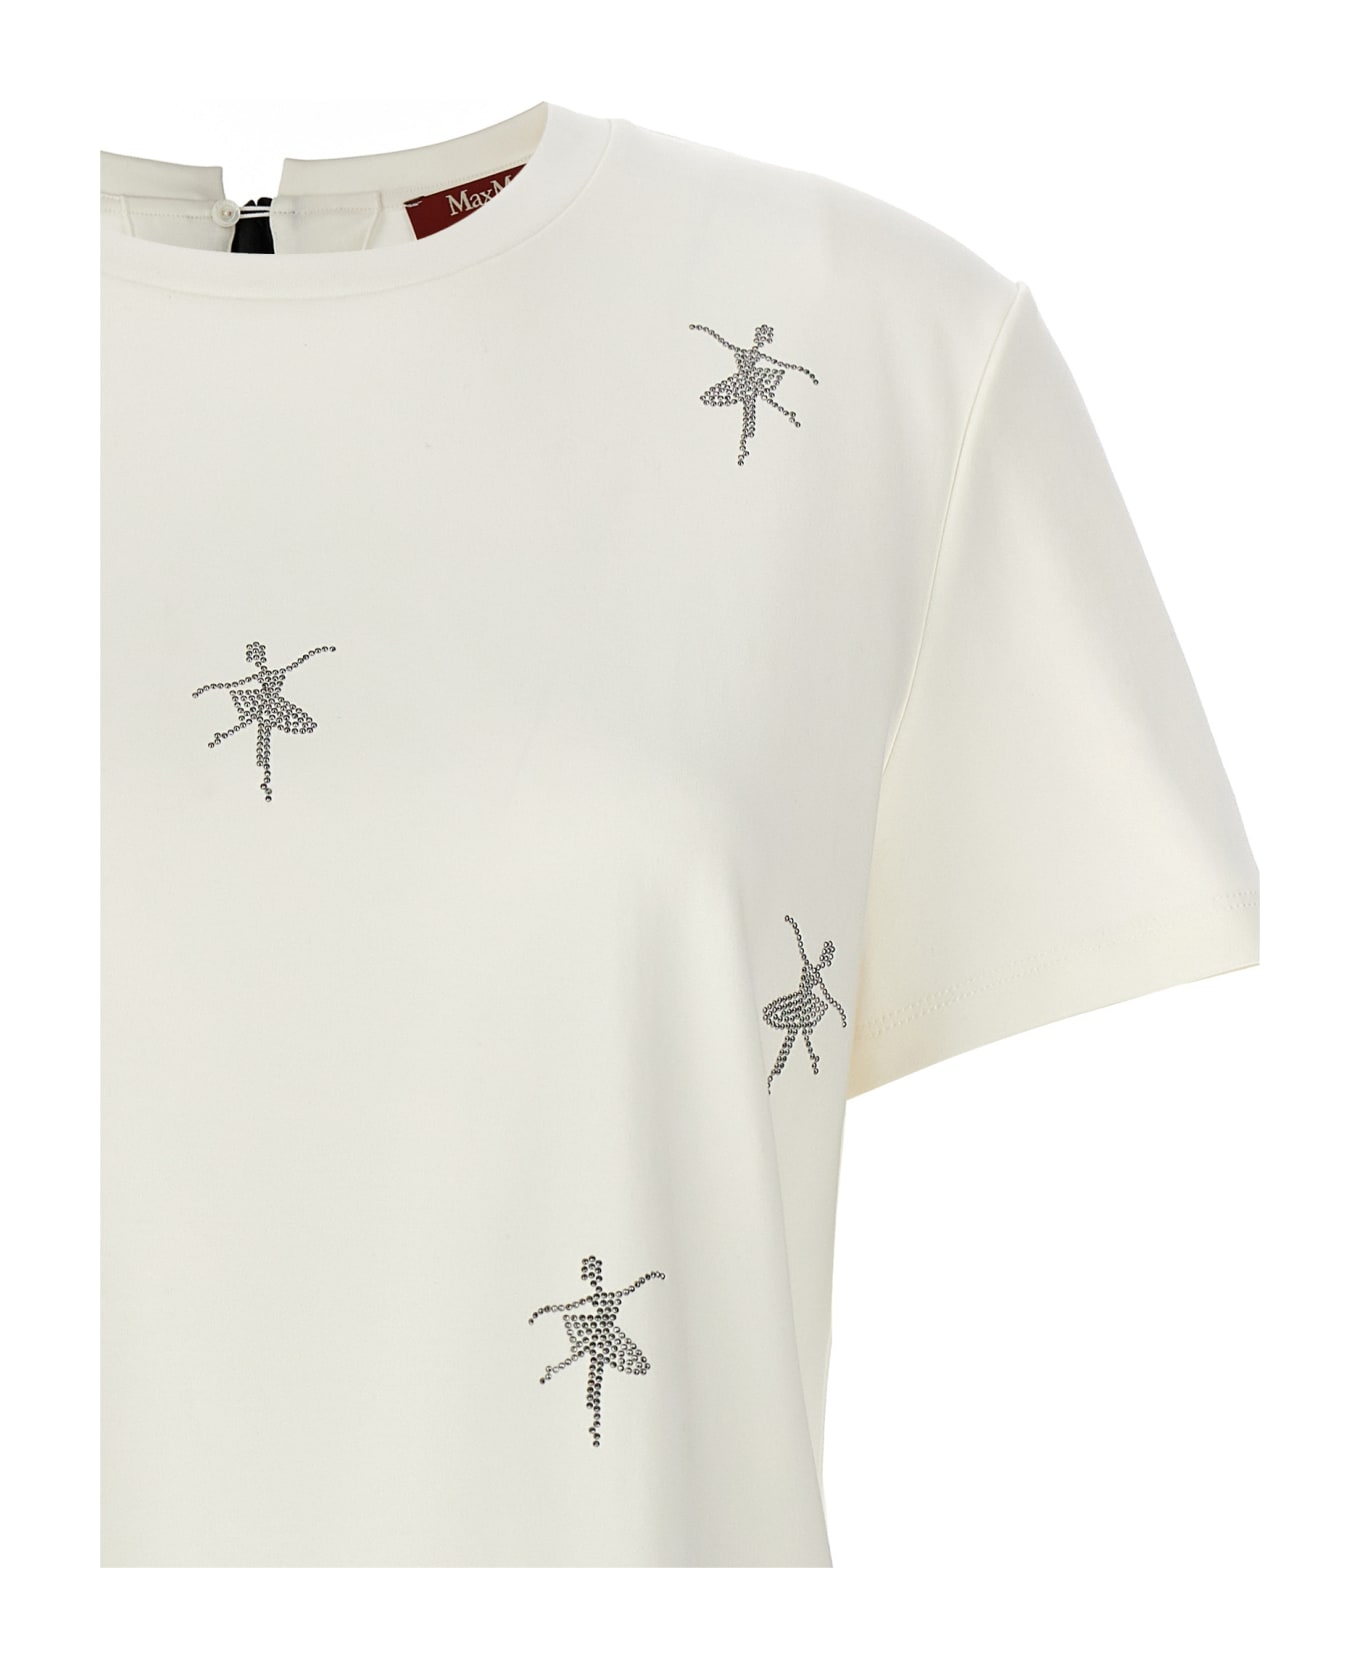 Max Mara Studio 'secchia' T-shirt - White Tシャツ